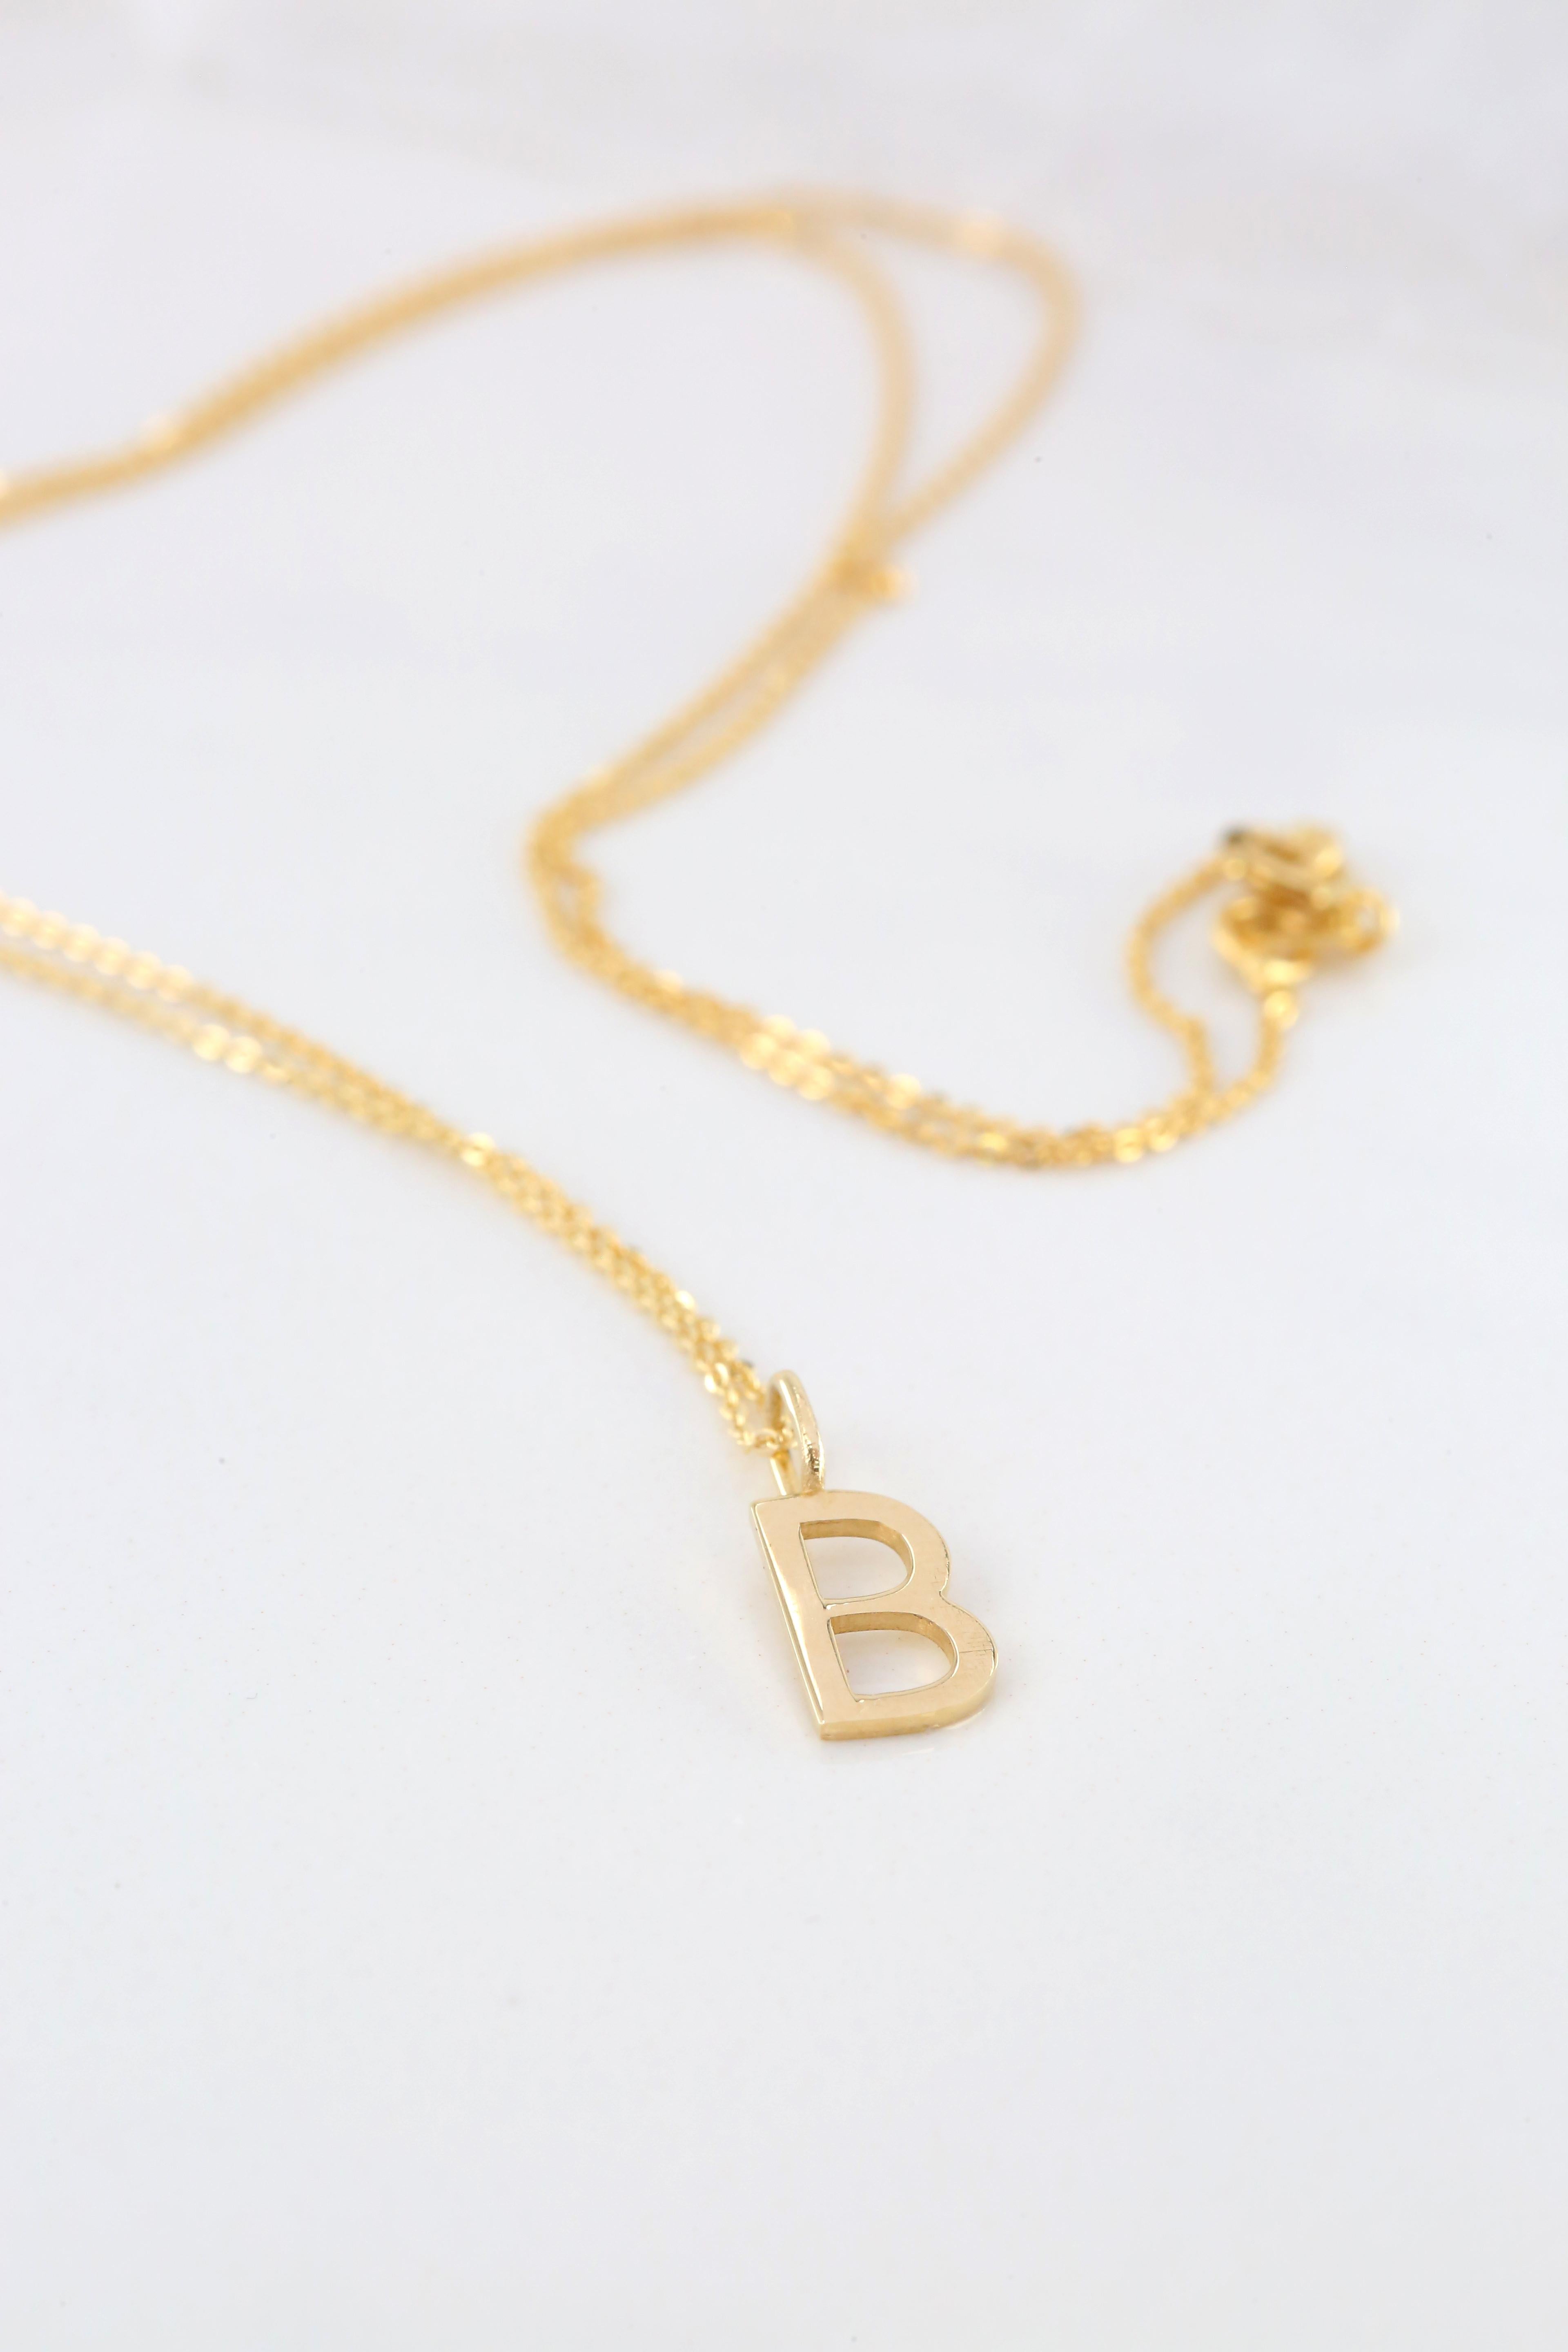 Modern 14k Gold Necklaces, Letter Necklace Models, Letter B Gold Necklace-Gift Necklace For Sale